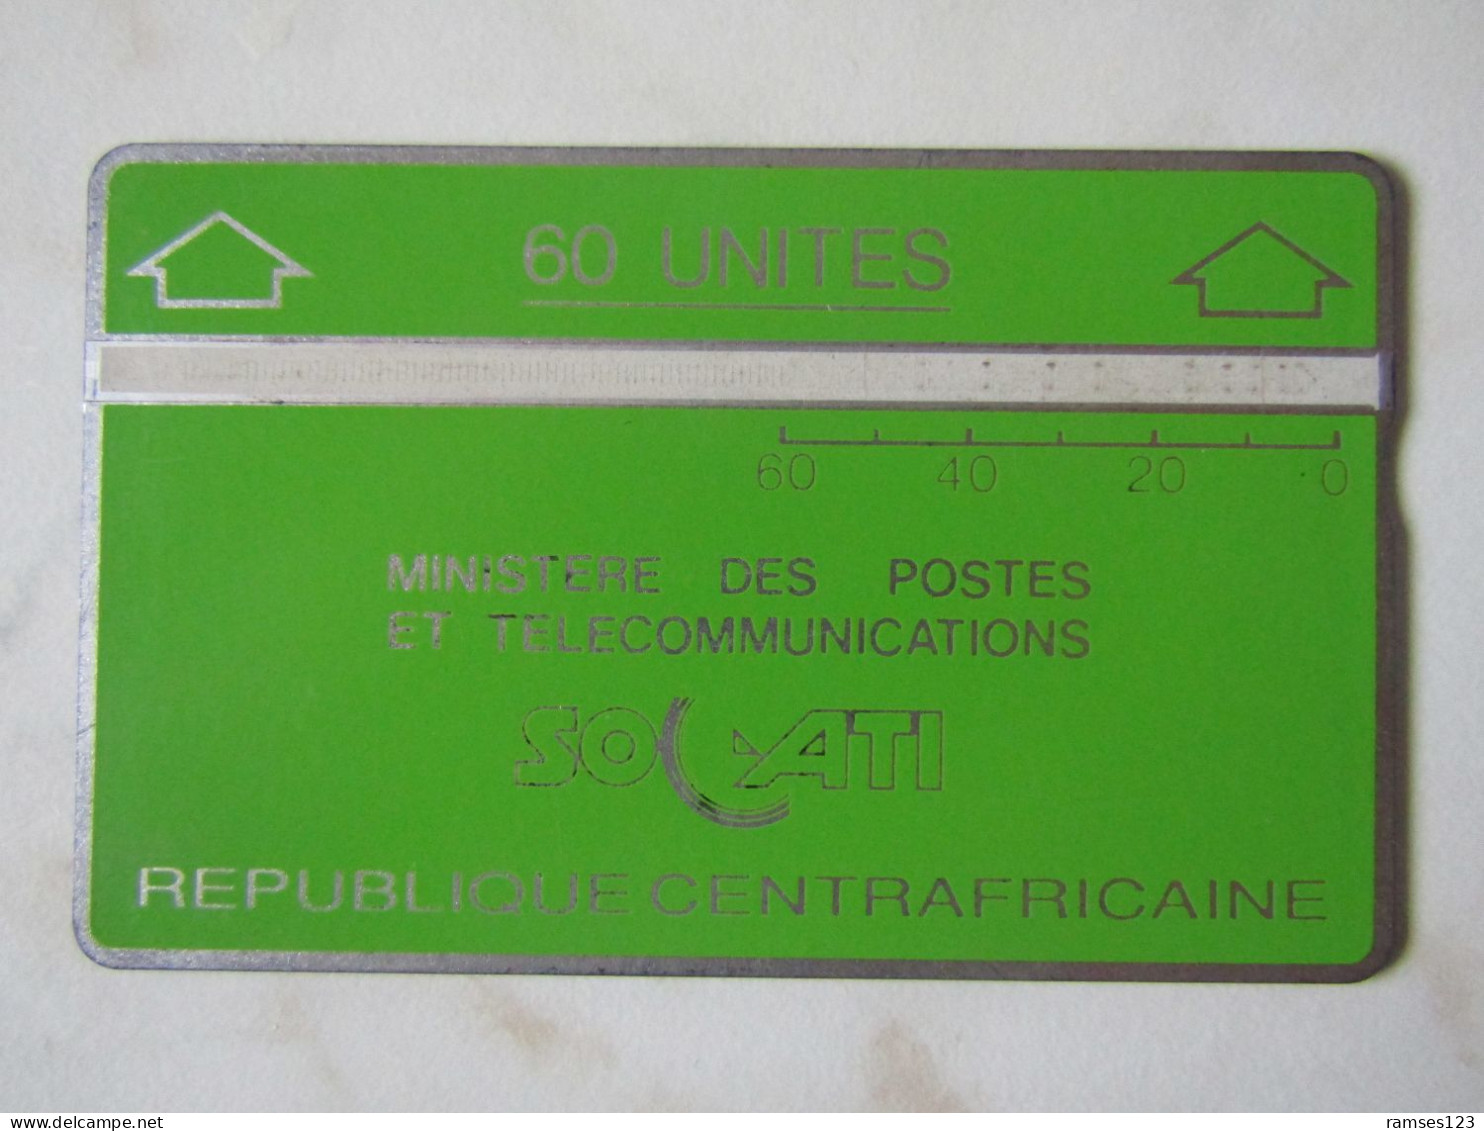 LANDIS GYR   60 UNITS CENTRAL  AFRIQUE  SOCATI  901C - Centrafricaine (République)